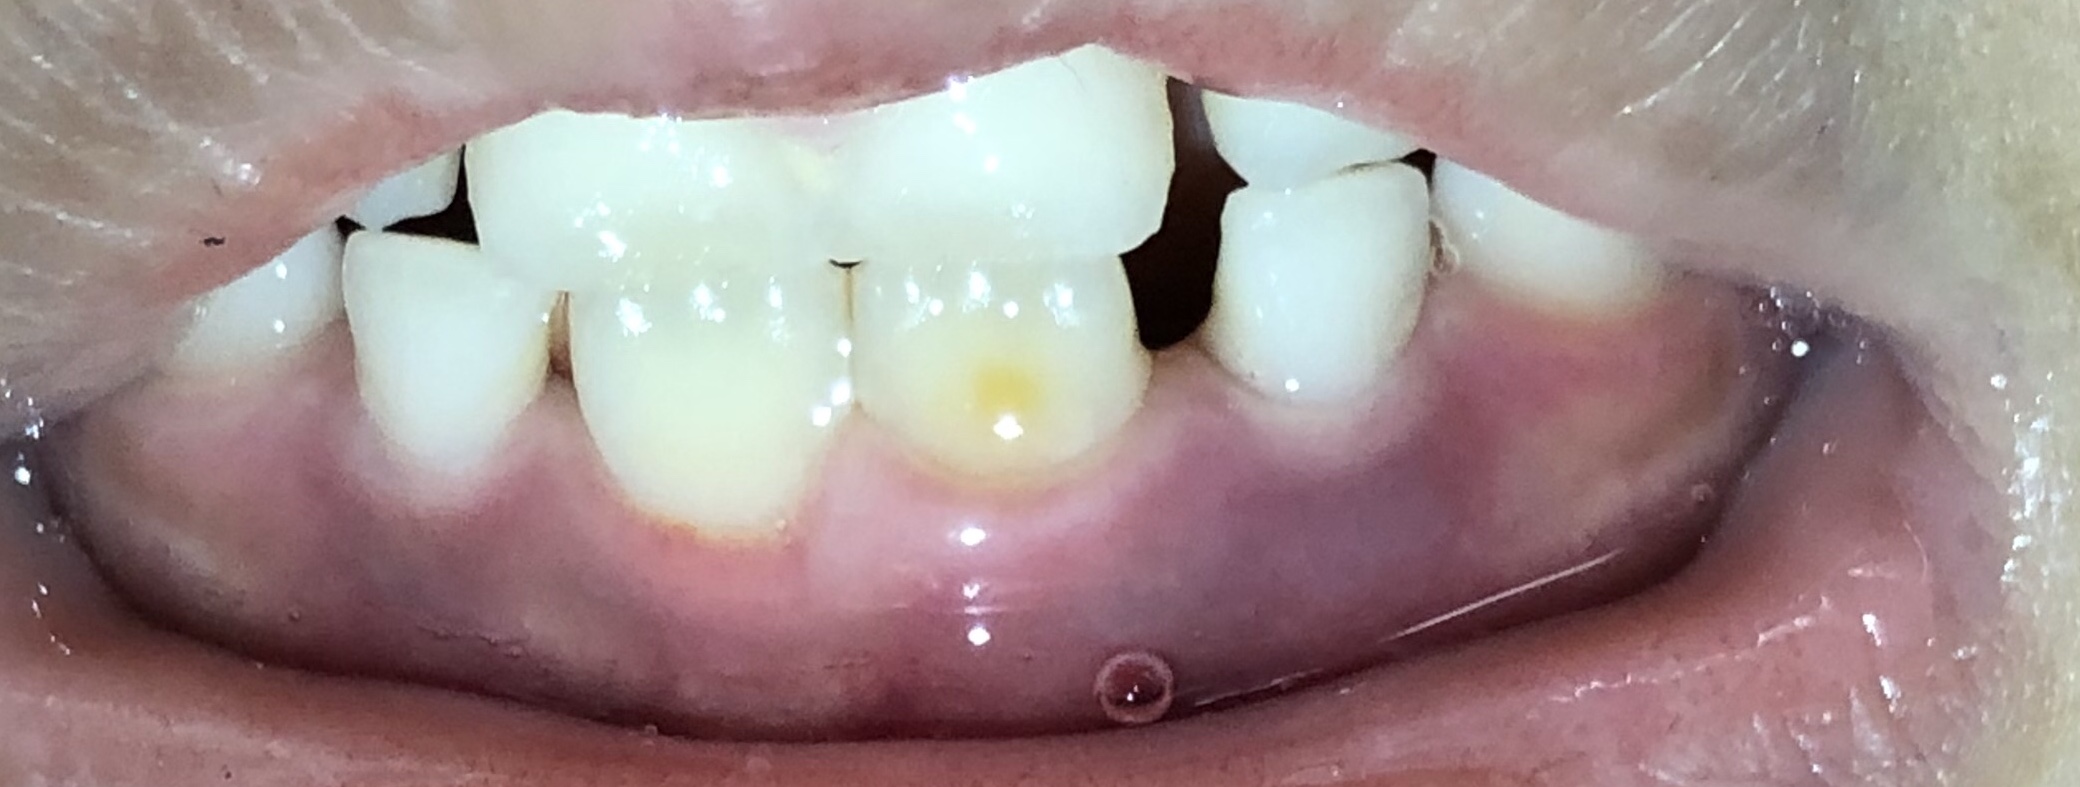 写真あり 子供の前歯が生え替わったら永久歯に黄色の斑点がある 歯チャンネル歯科相談室